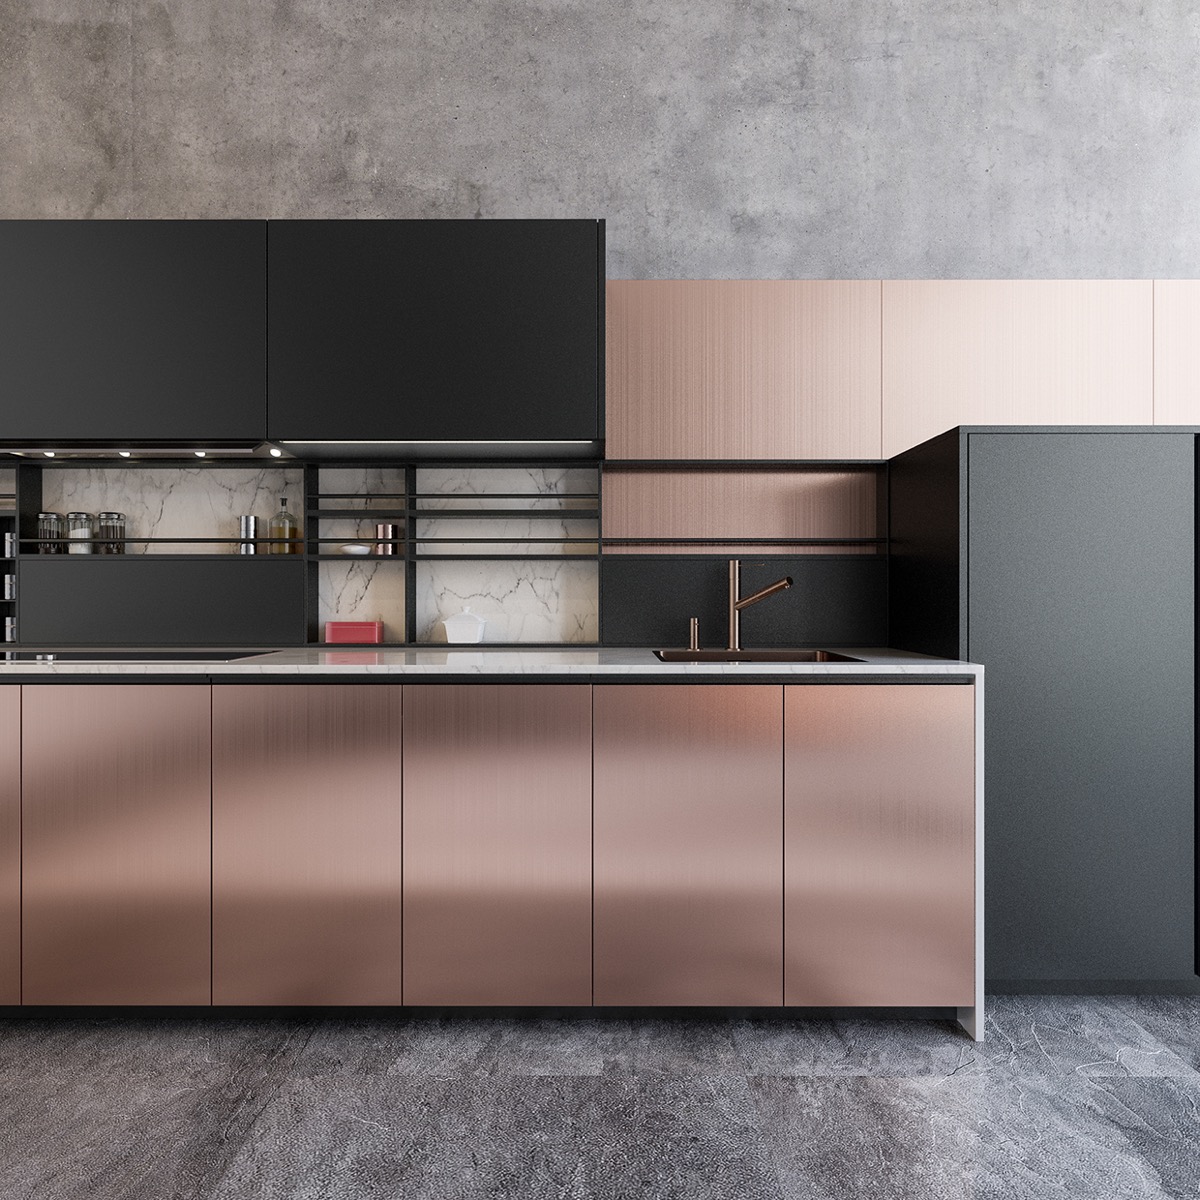 16 کابینت آشپزخانه فوق العاده زیبا که از فلز مس در آن استفاده شده